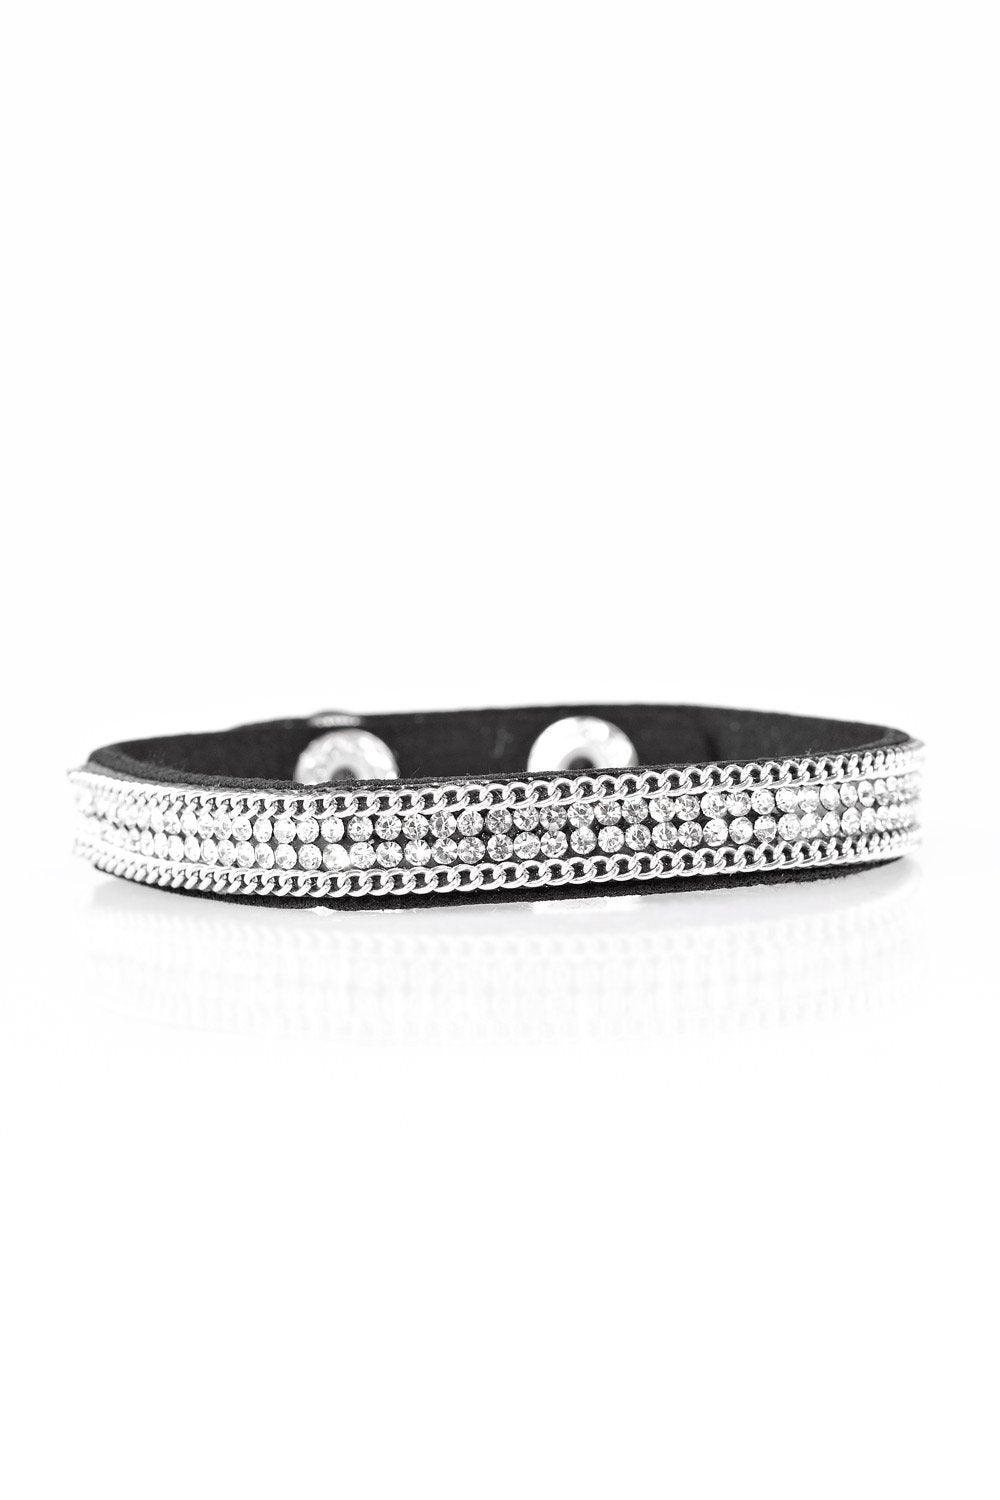 Babe Bling Black Bracelet - Jewelry By Bretta - Jewelry by Bretta